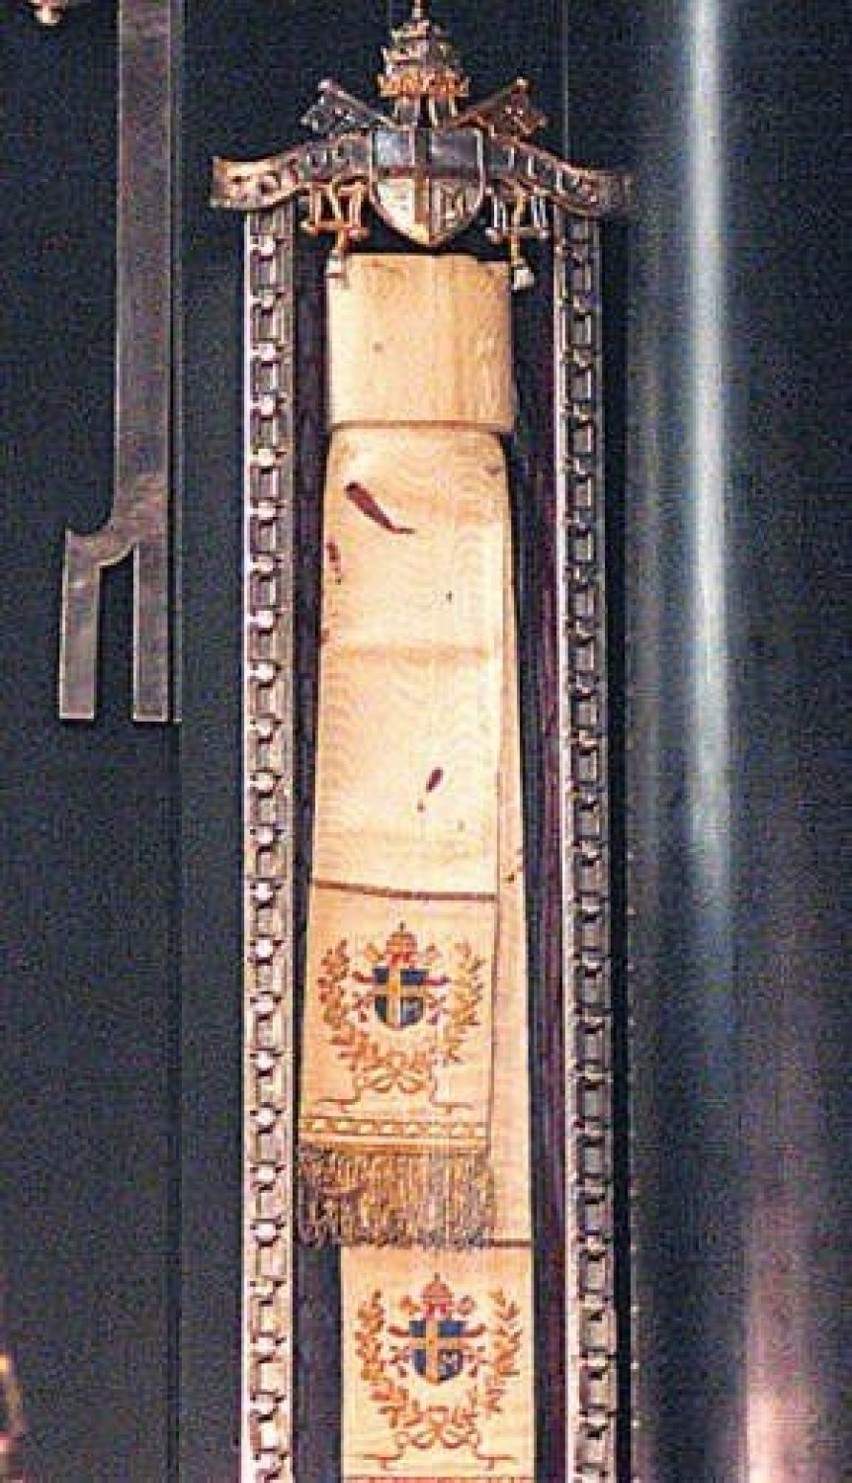 40. rocznica zamachu na Jana Pawła II. Przestrzelony pas sutanny  ze śladami krwi papieża - relikwia na Jasnej Górze 